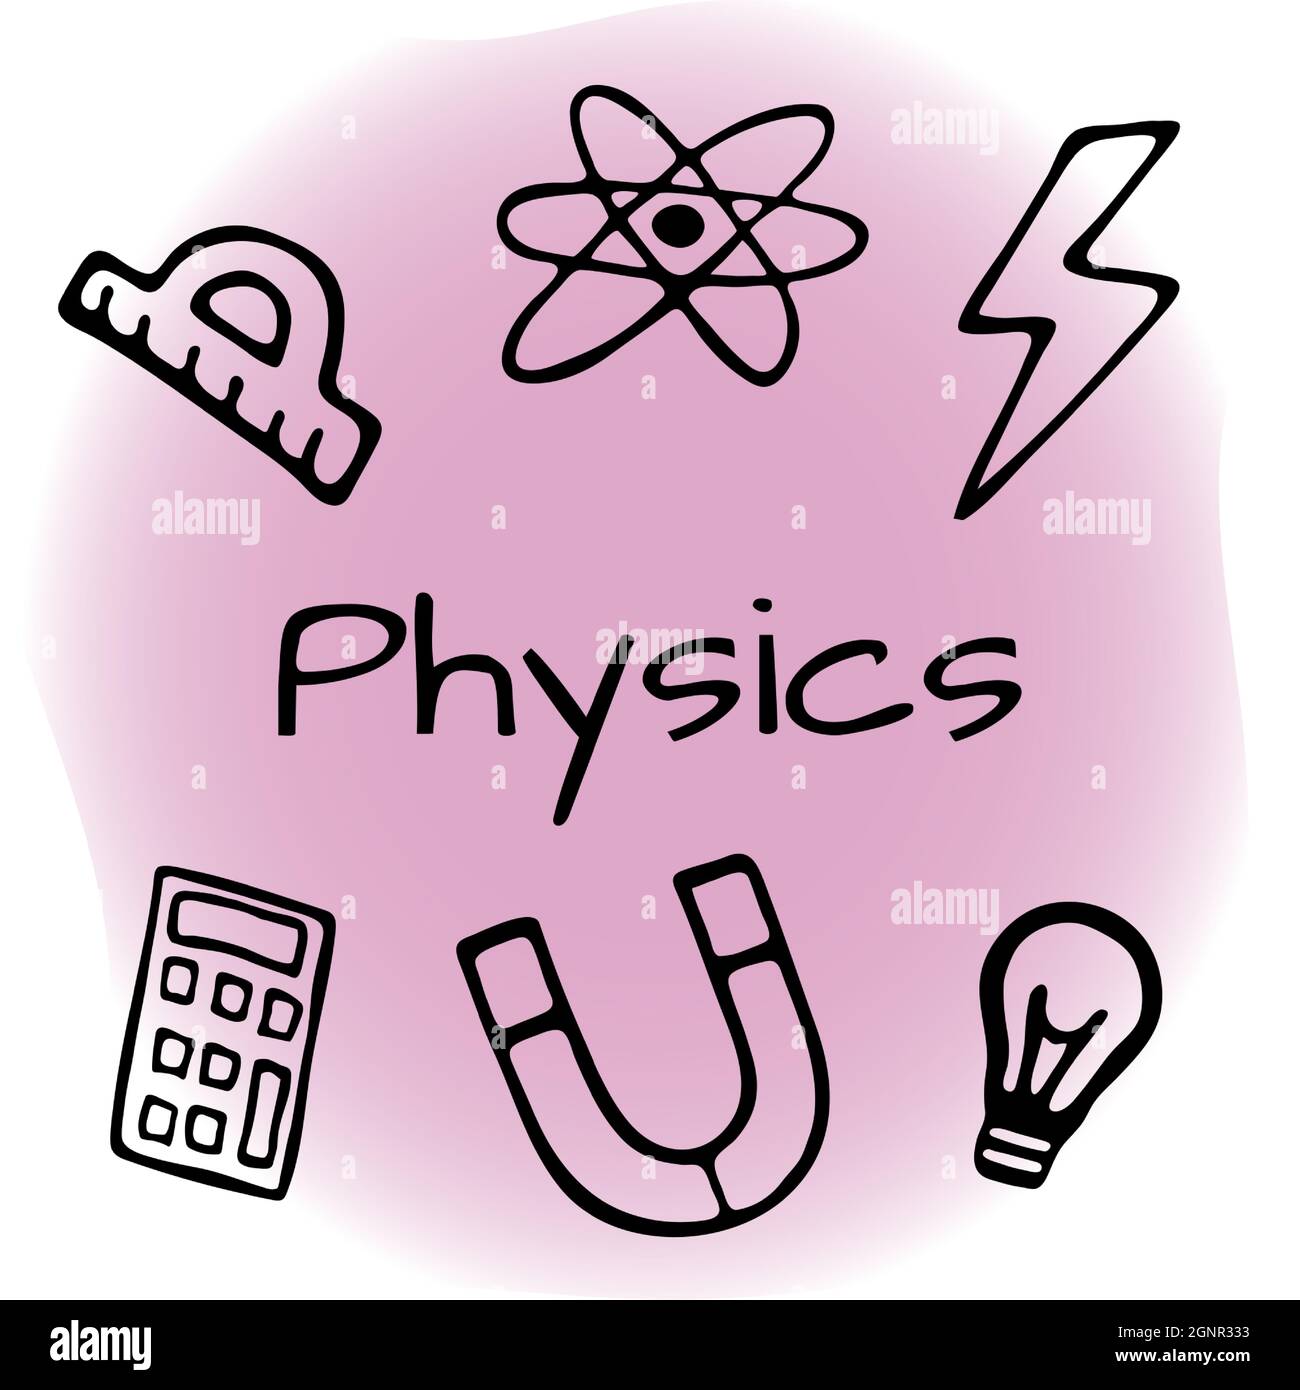 Handgezeichnetes Physik Design Set. Vektorgrafik im Doodle-Stil auf farbigem Hintergrund isoliert. Stock Vektor